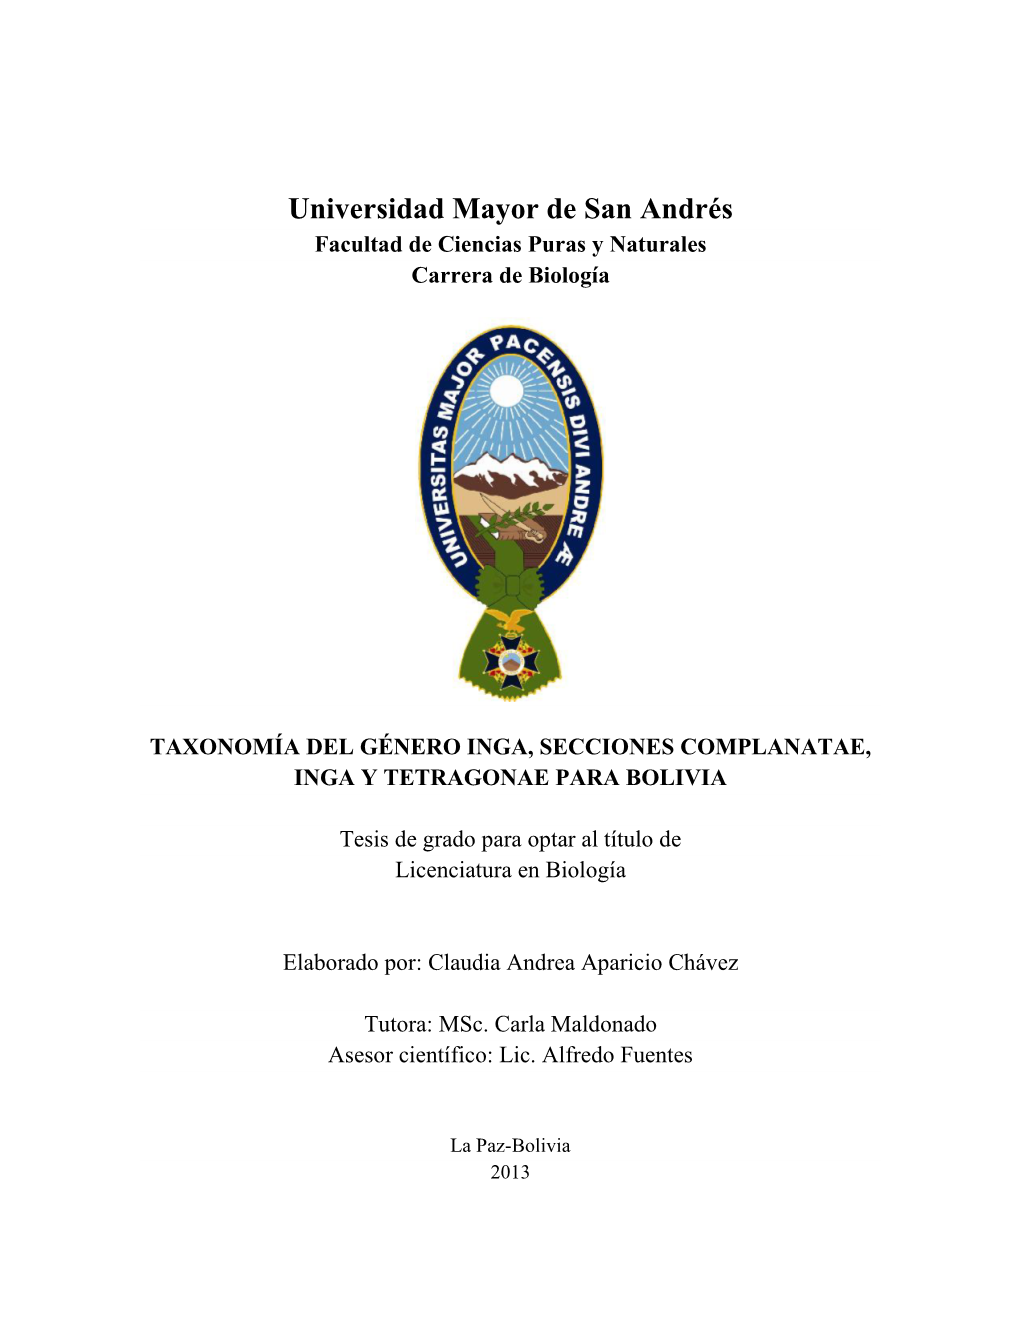 Universidad Mayor De San Andrés Facultad De Ciencias Puras Y Naturales Carrera De Biología